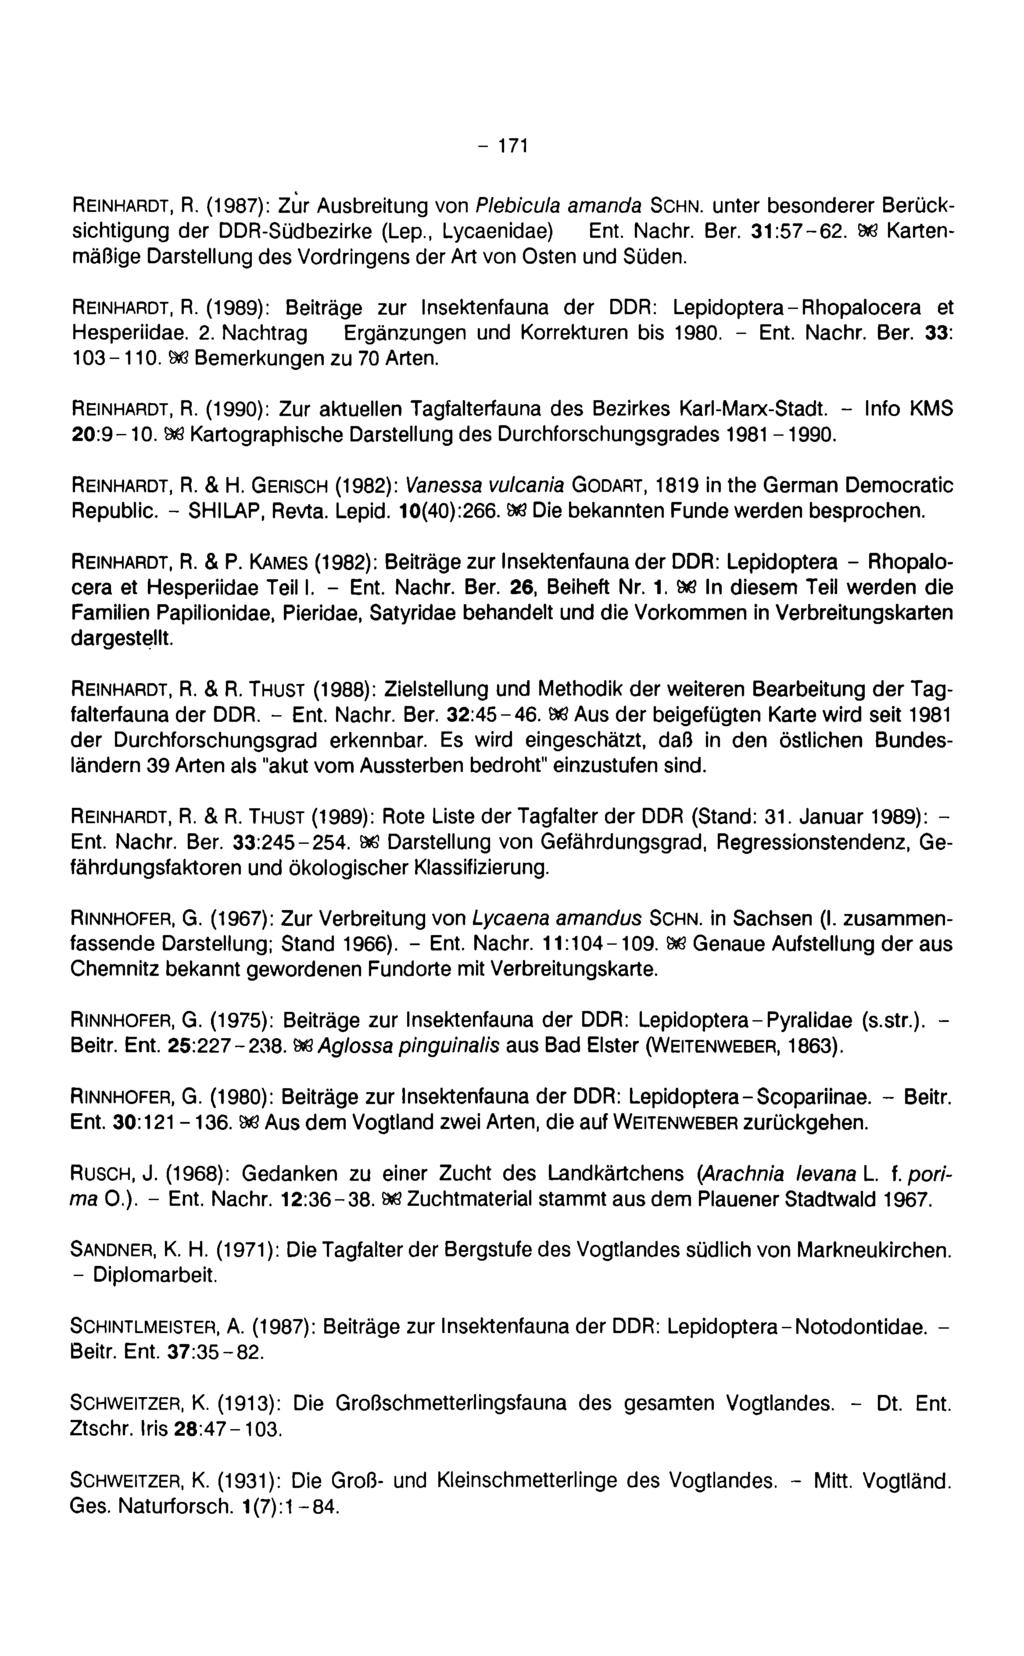 - 171 Reinhardt, R. (1987): Zur Ausbreitung von Plebicula amanda Schn, unter besonderer Berücksichtigung der DDR-Südbezirke (Lep., Lycaenidae) Ent. Nachr. Ber. 31:57-62.